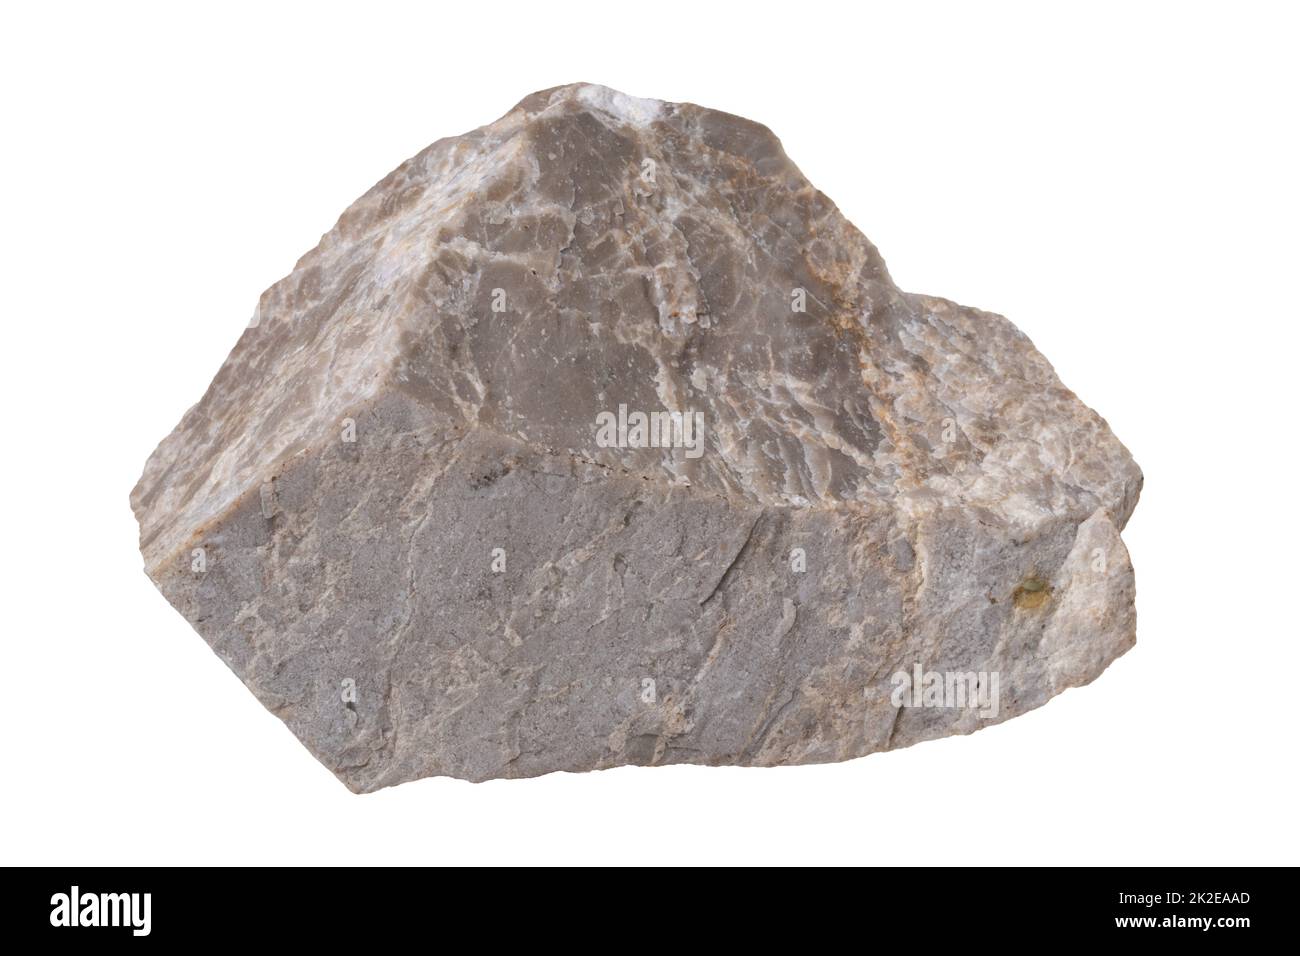 Minerali isolati. Primo piano di un campione di roccia sedimentaria naturale, un conglomerato calcareo grigio o bianco isolato su sfondo bianco. Foto Stock